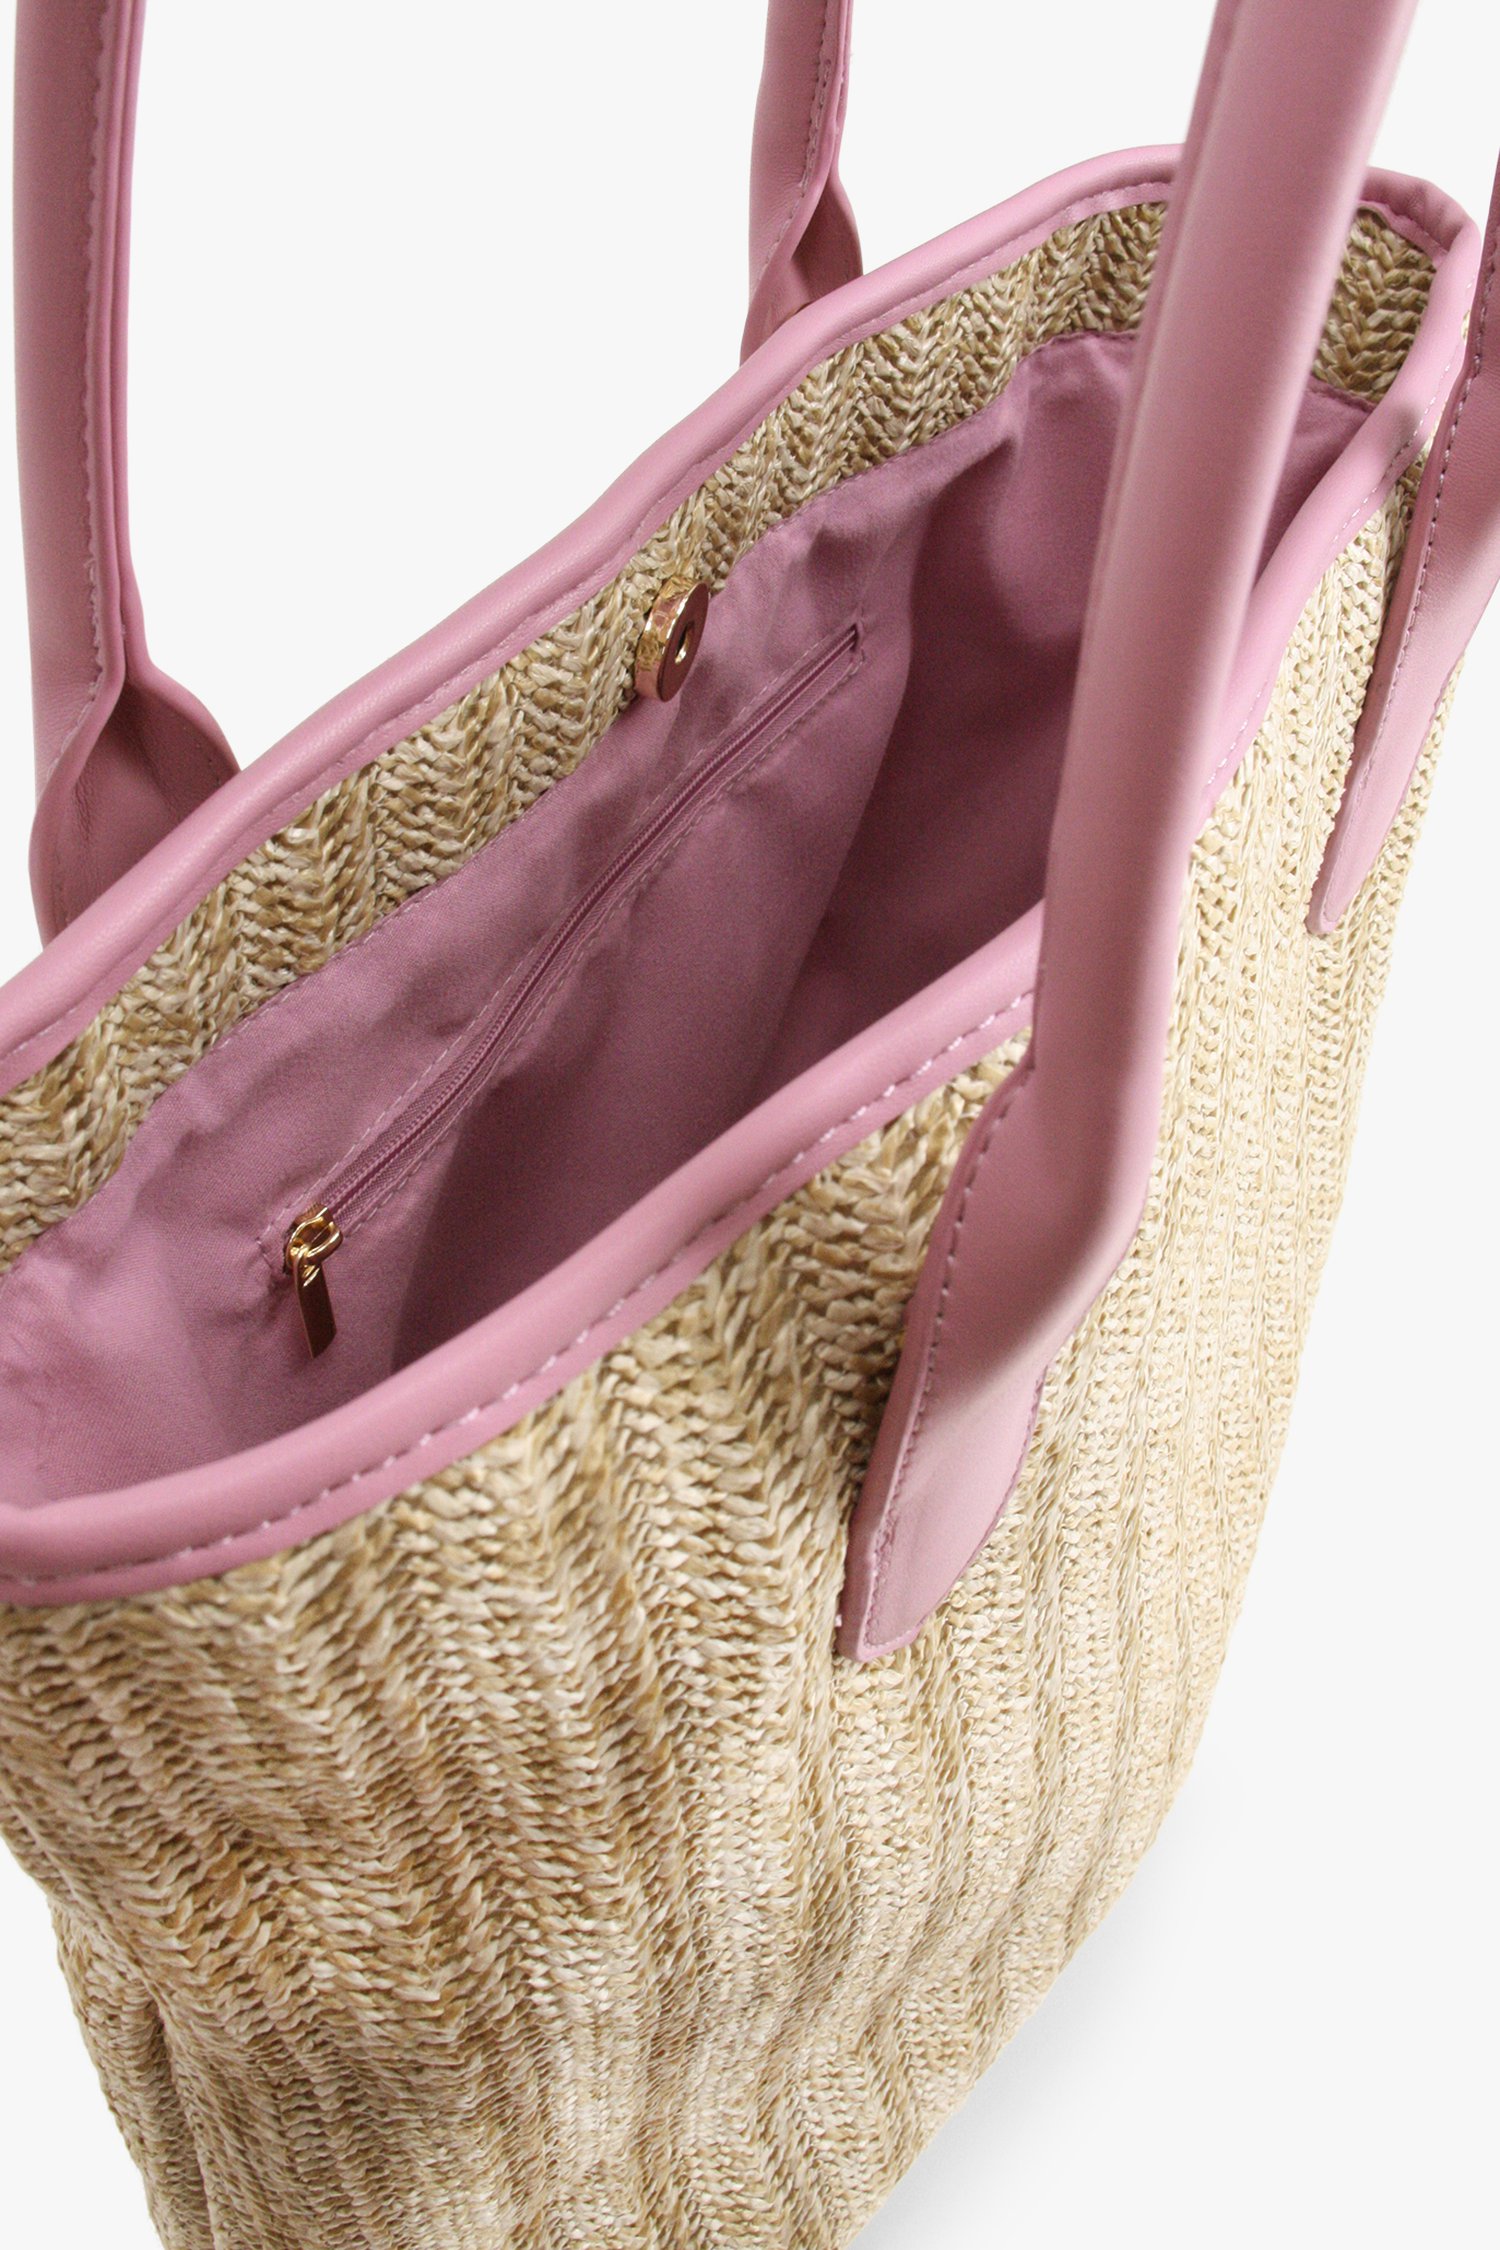 Beige rieten handtas met roze details van Modeno voor Dames